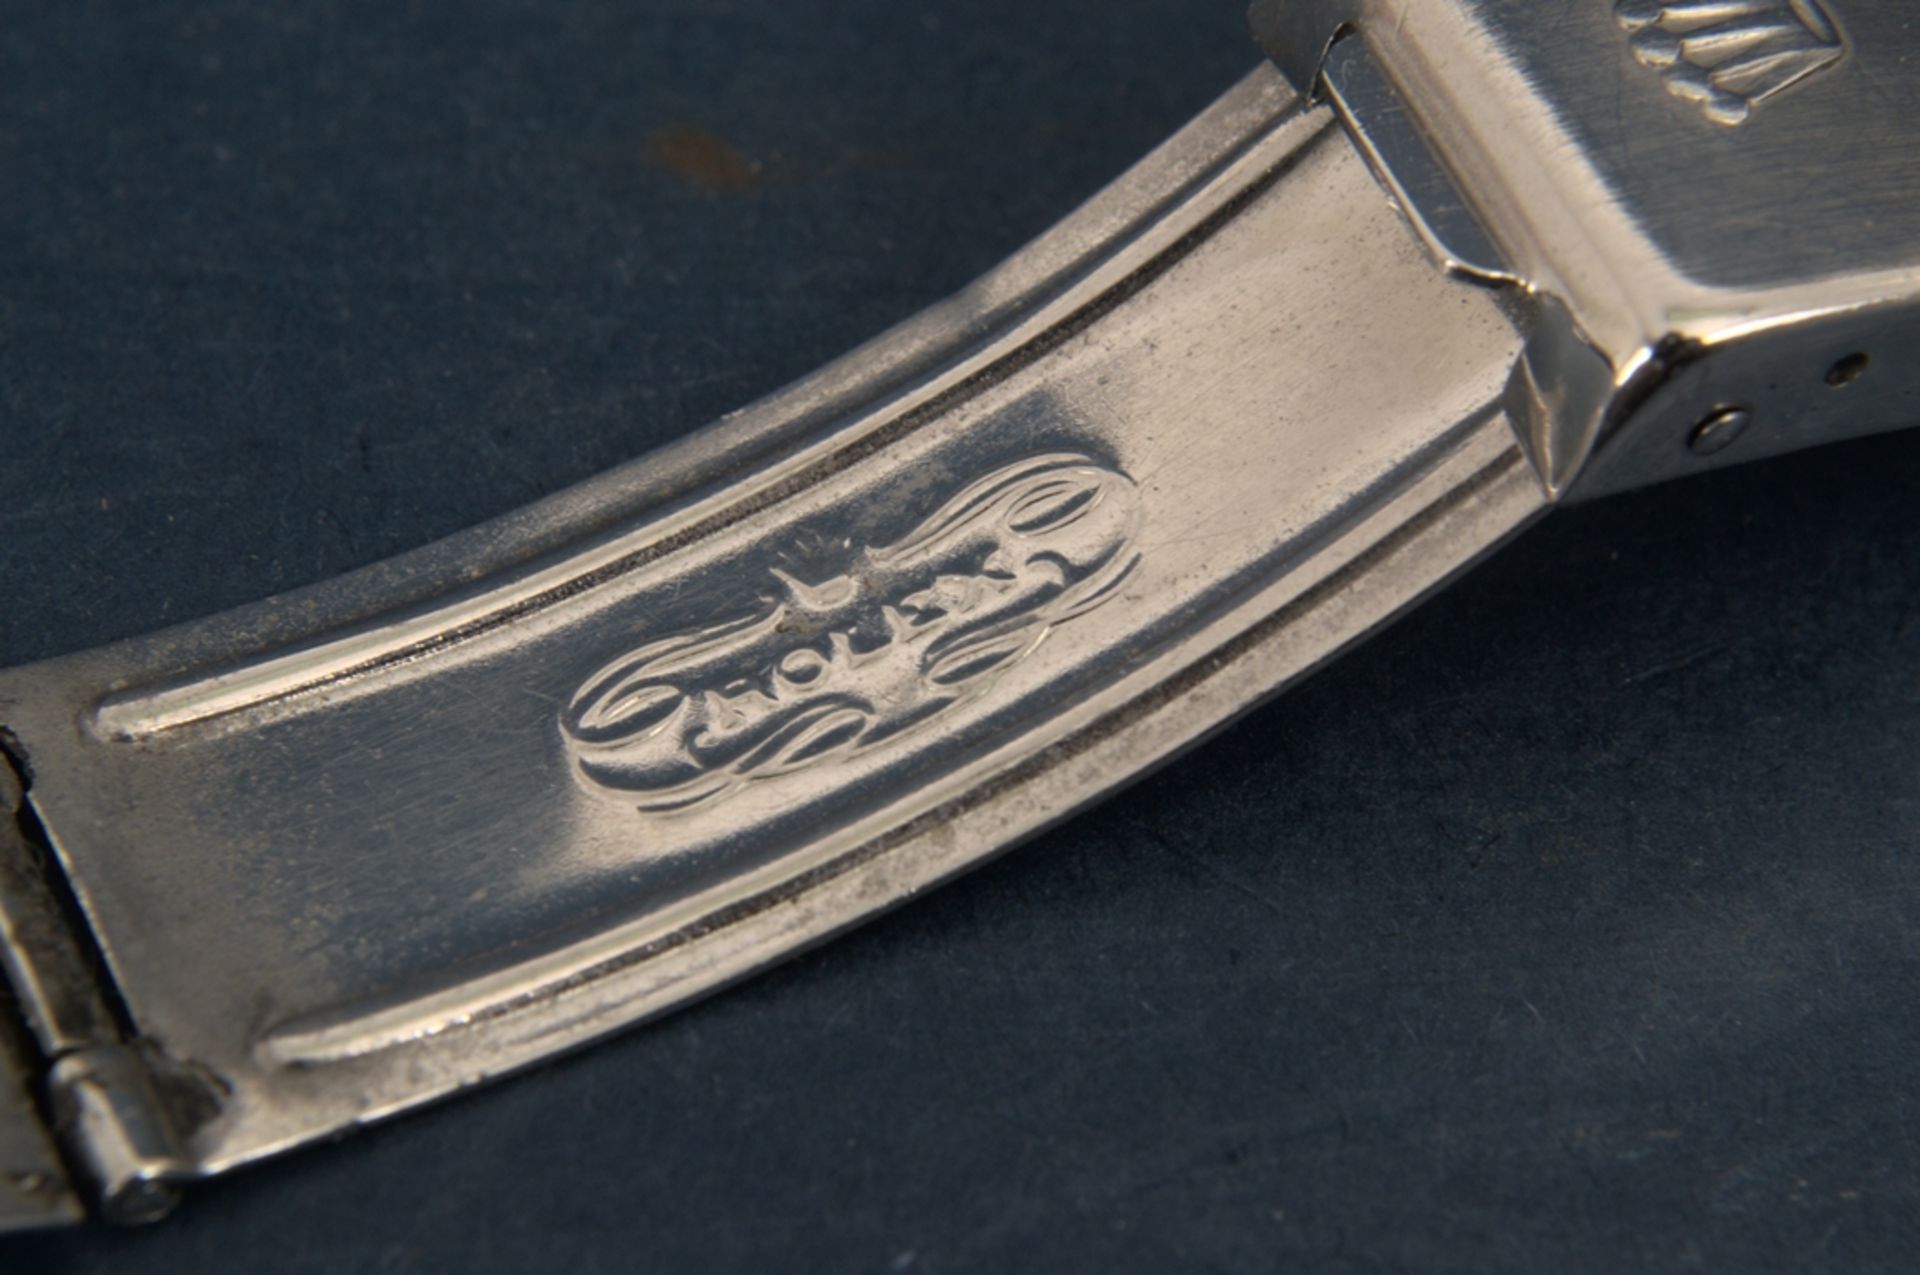 Rolex-Gliederarmband mit Faltschließe der wohl 1960er/70er Jahre, Stahl. Max. Gesamtlänge inkl. - Bild 4 aus 12